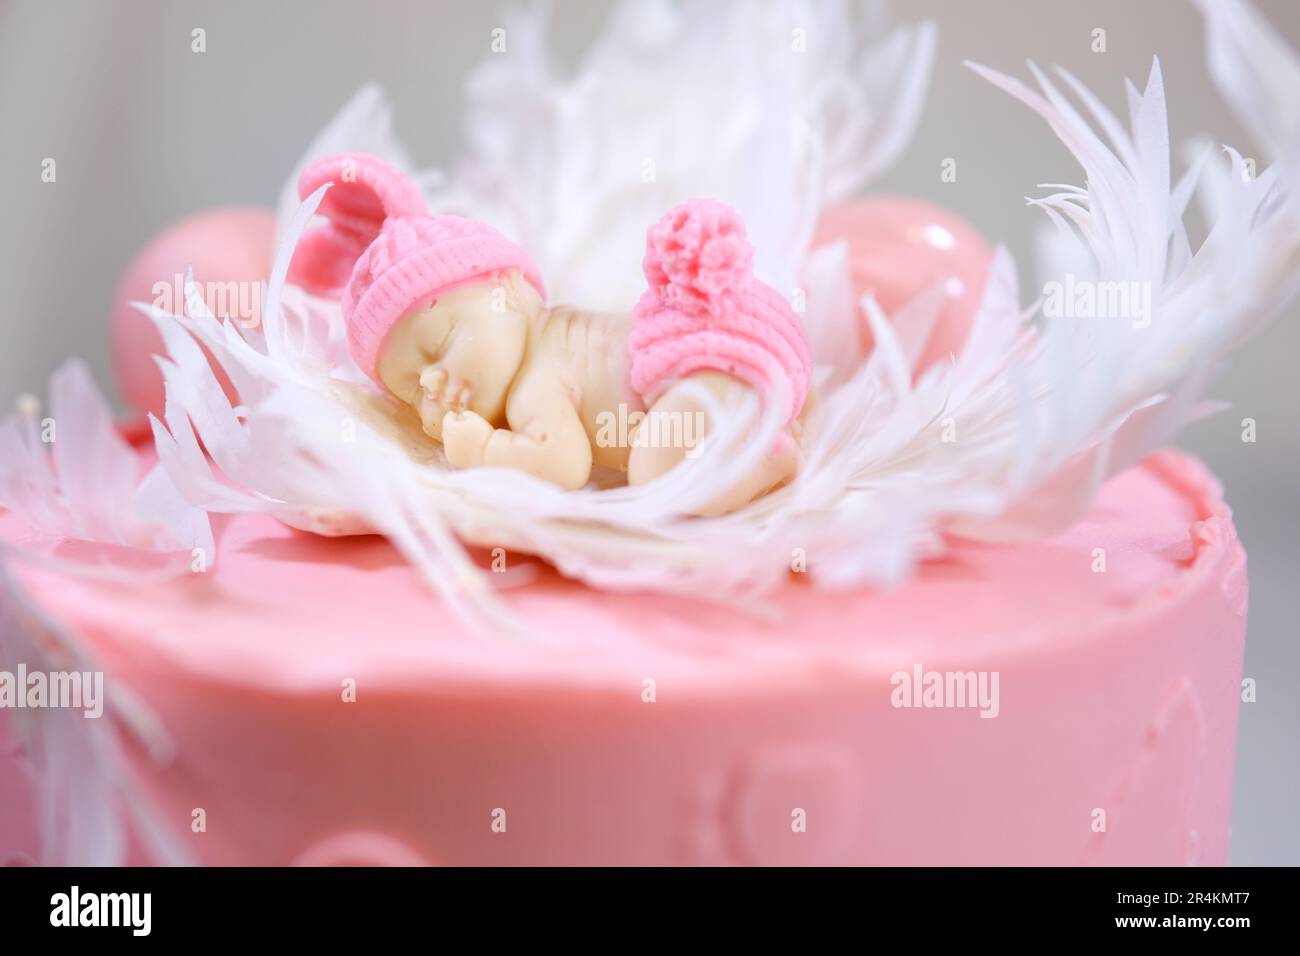 Dekoration eines Kuchens für eine Familie Taufe rosa Kuchen mit Fußabdrücken eines kleinen Kindes auf Engelsflügeln und Baby in rosa Windel ein Mädchen, wie man das Geschlecht des Kindes mithilfe eines Kuchens herausfinden kann Stockfoto